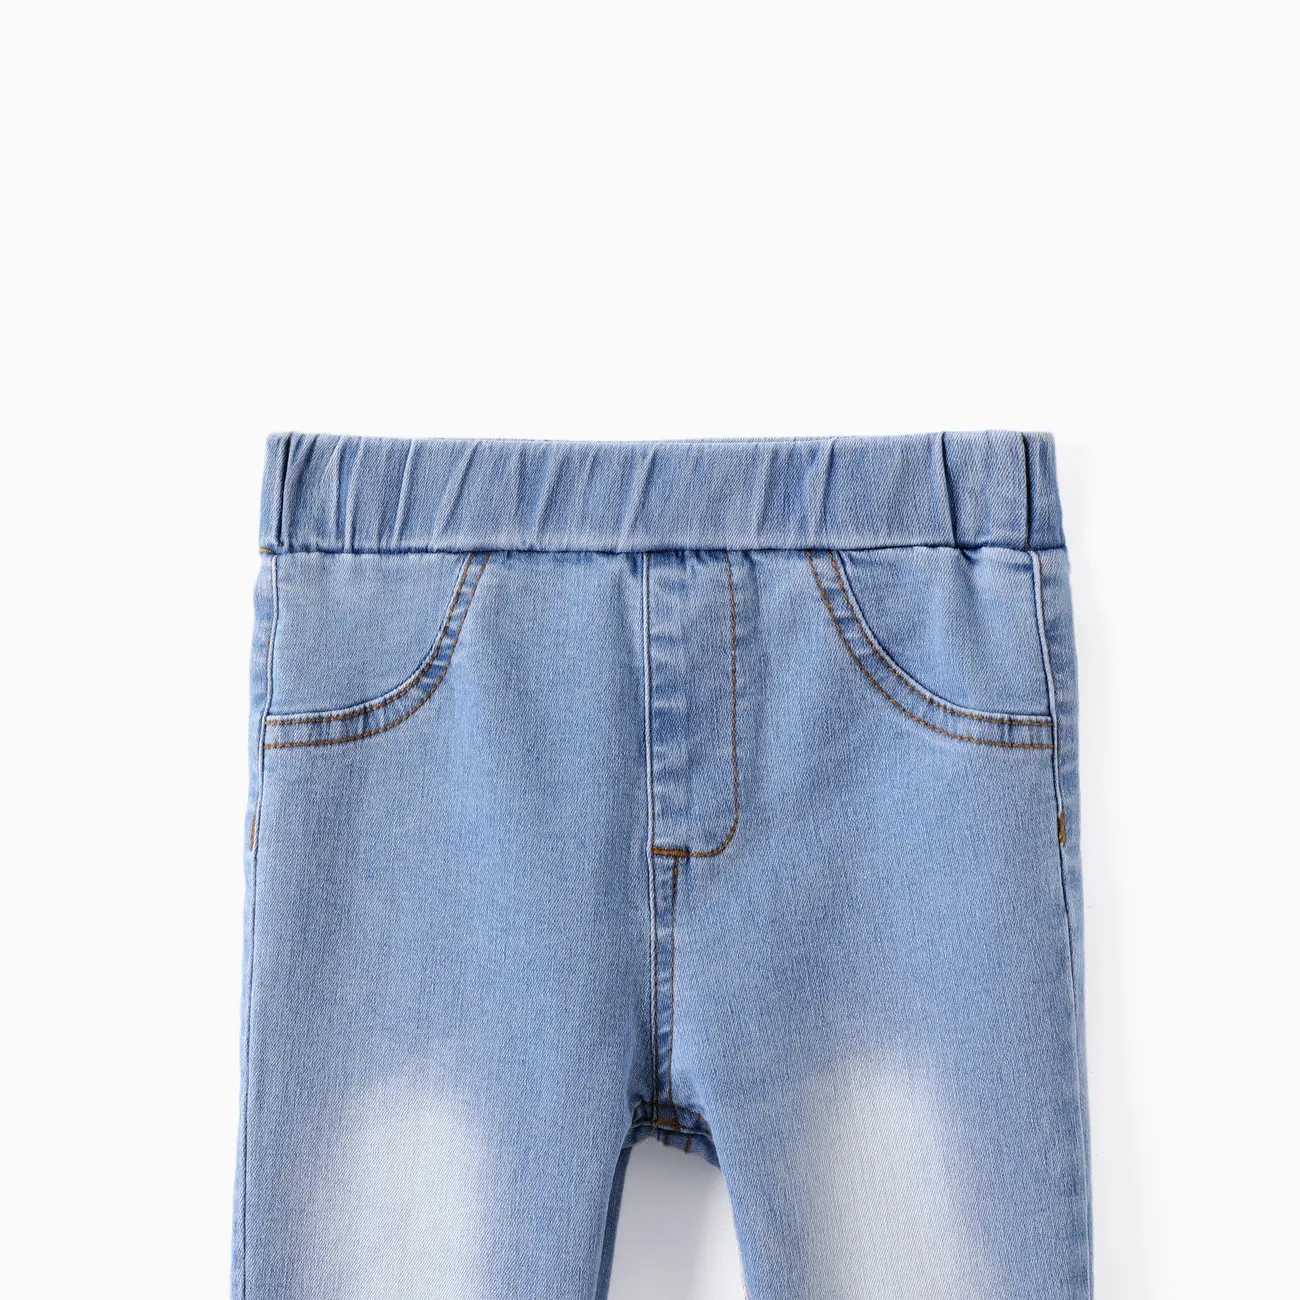 Kleinkind / Kind Mädchen 2pcs Blumendruck Leggings & Solid Denim Jeans Set Mehrfarbig big image 1